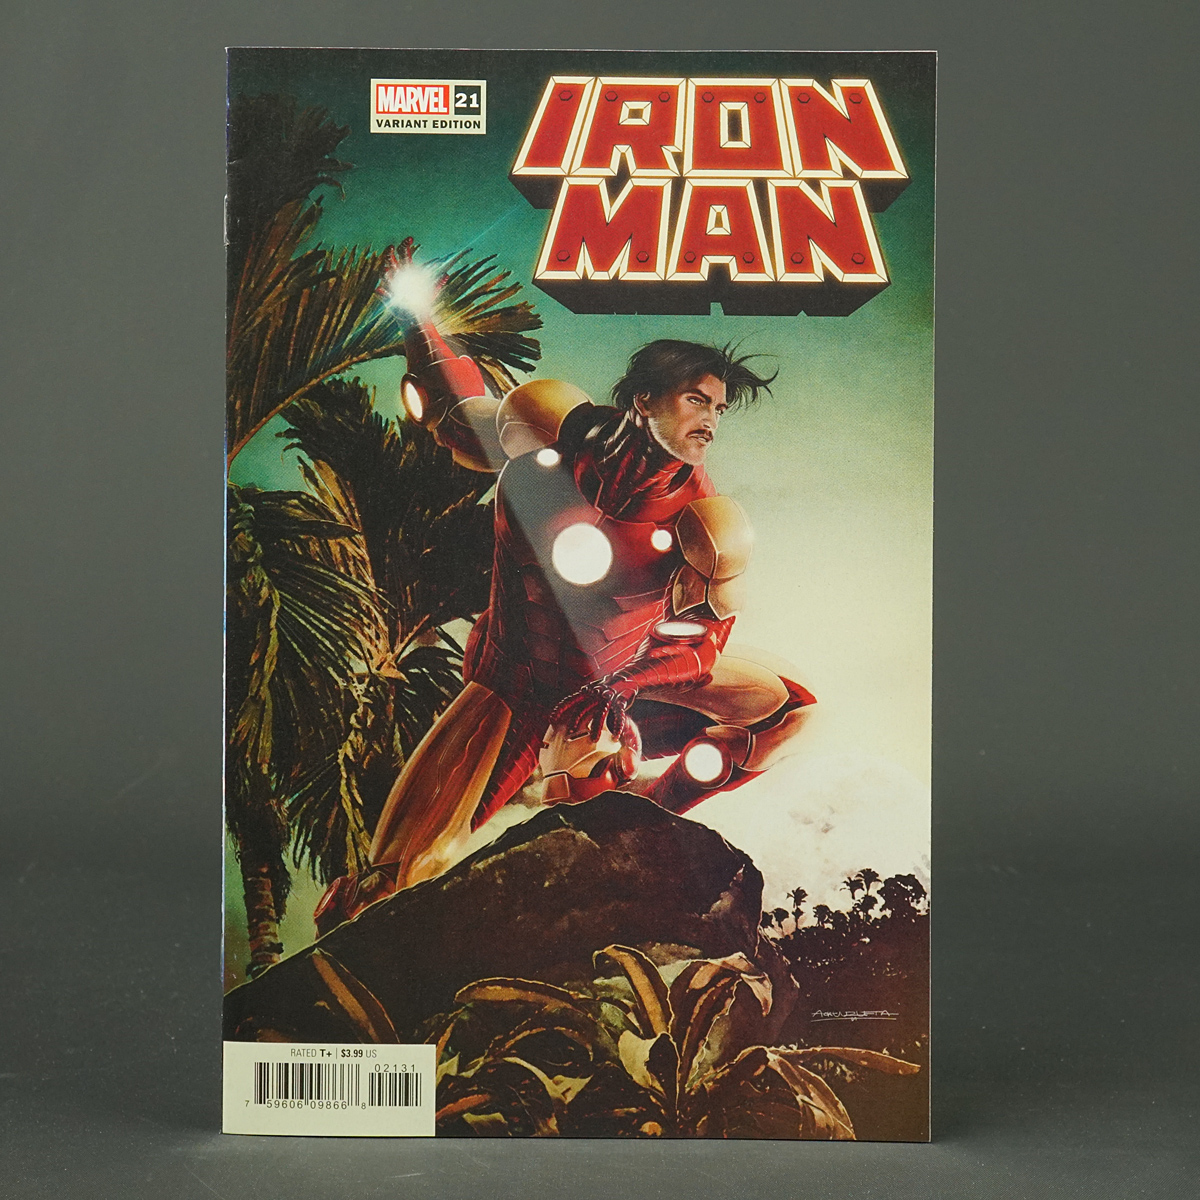 IRON MAN #21 var Marvel Comics 2022 APR220993 (W)Cantwell (A/CA) Unzueta 230607B